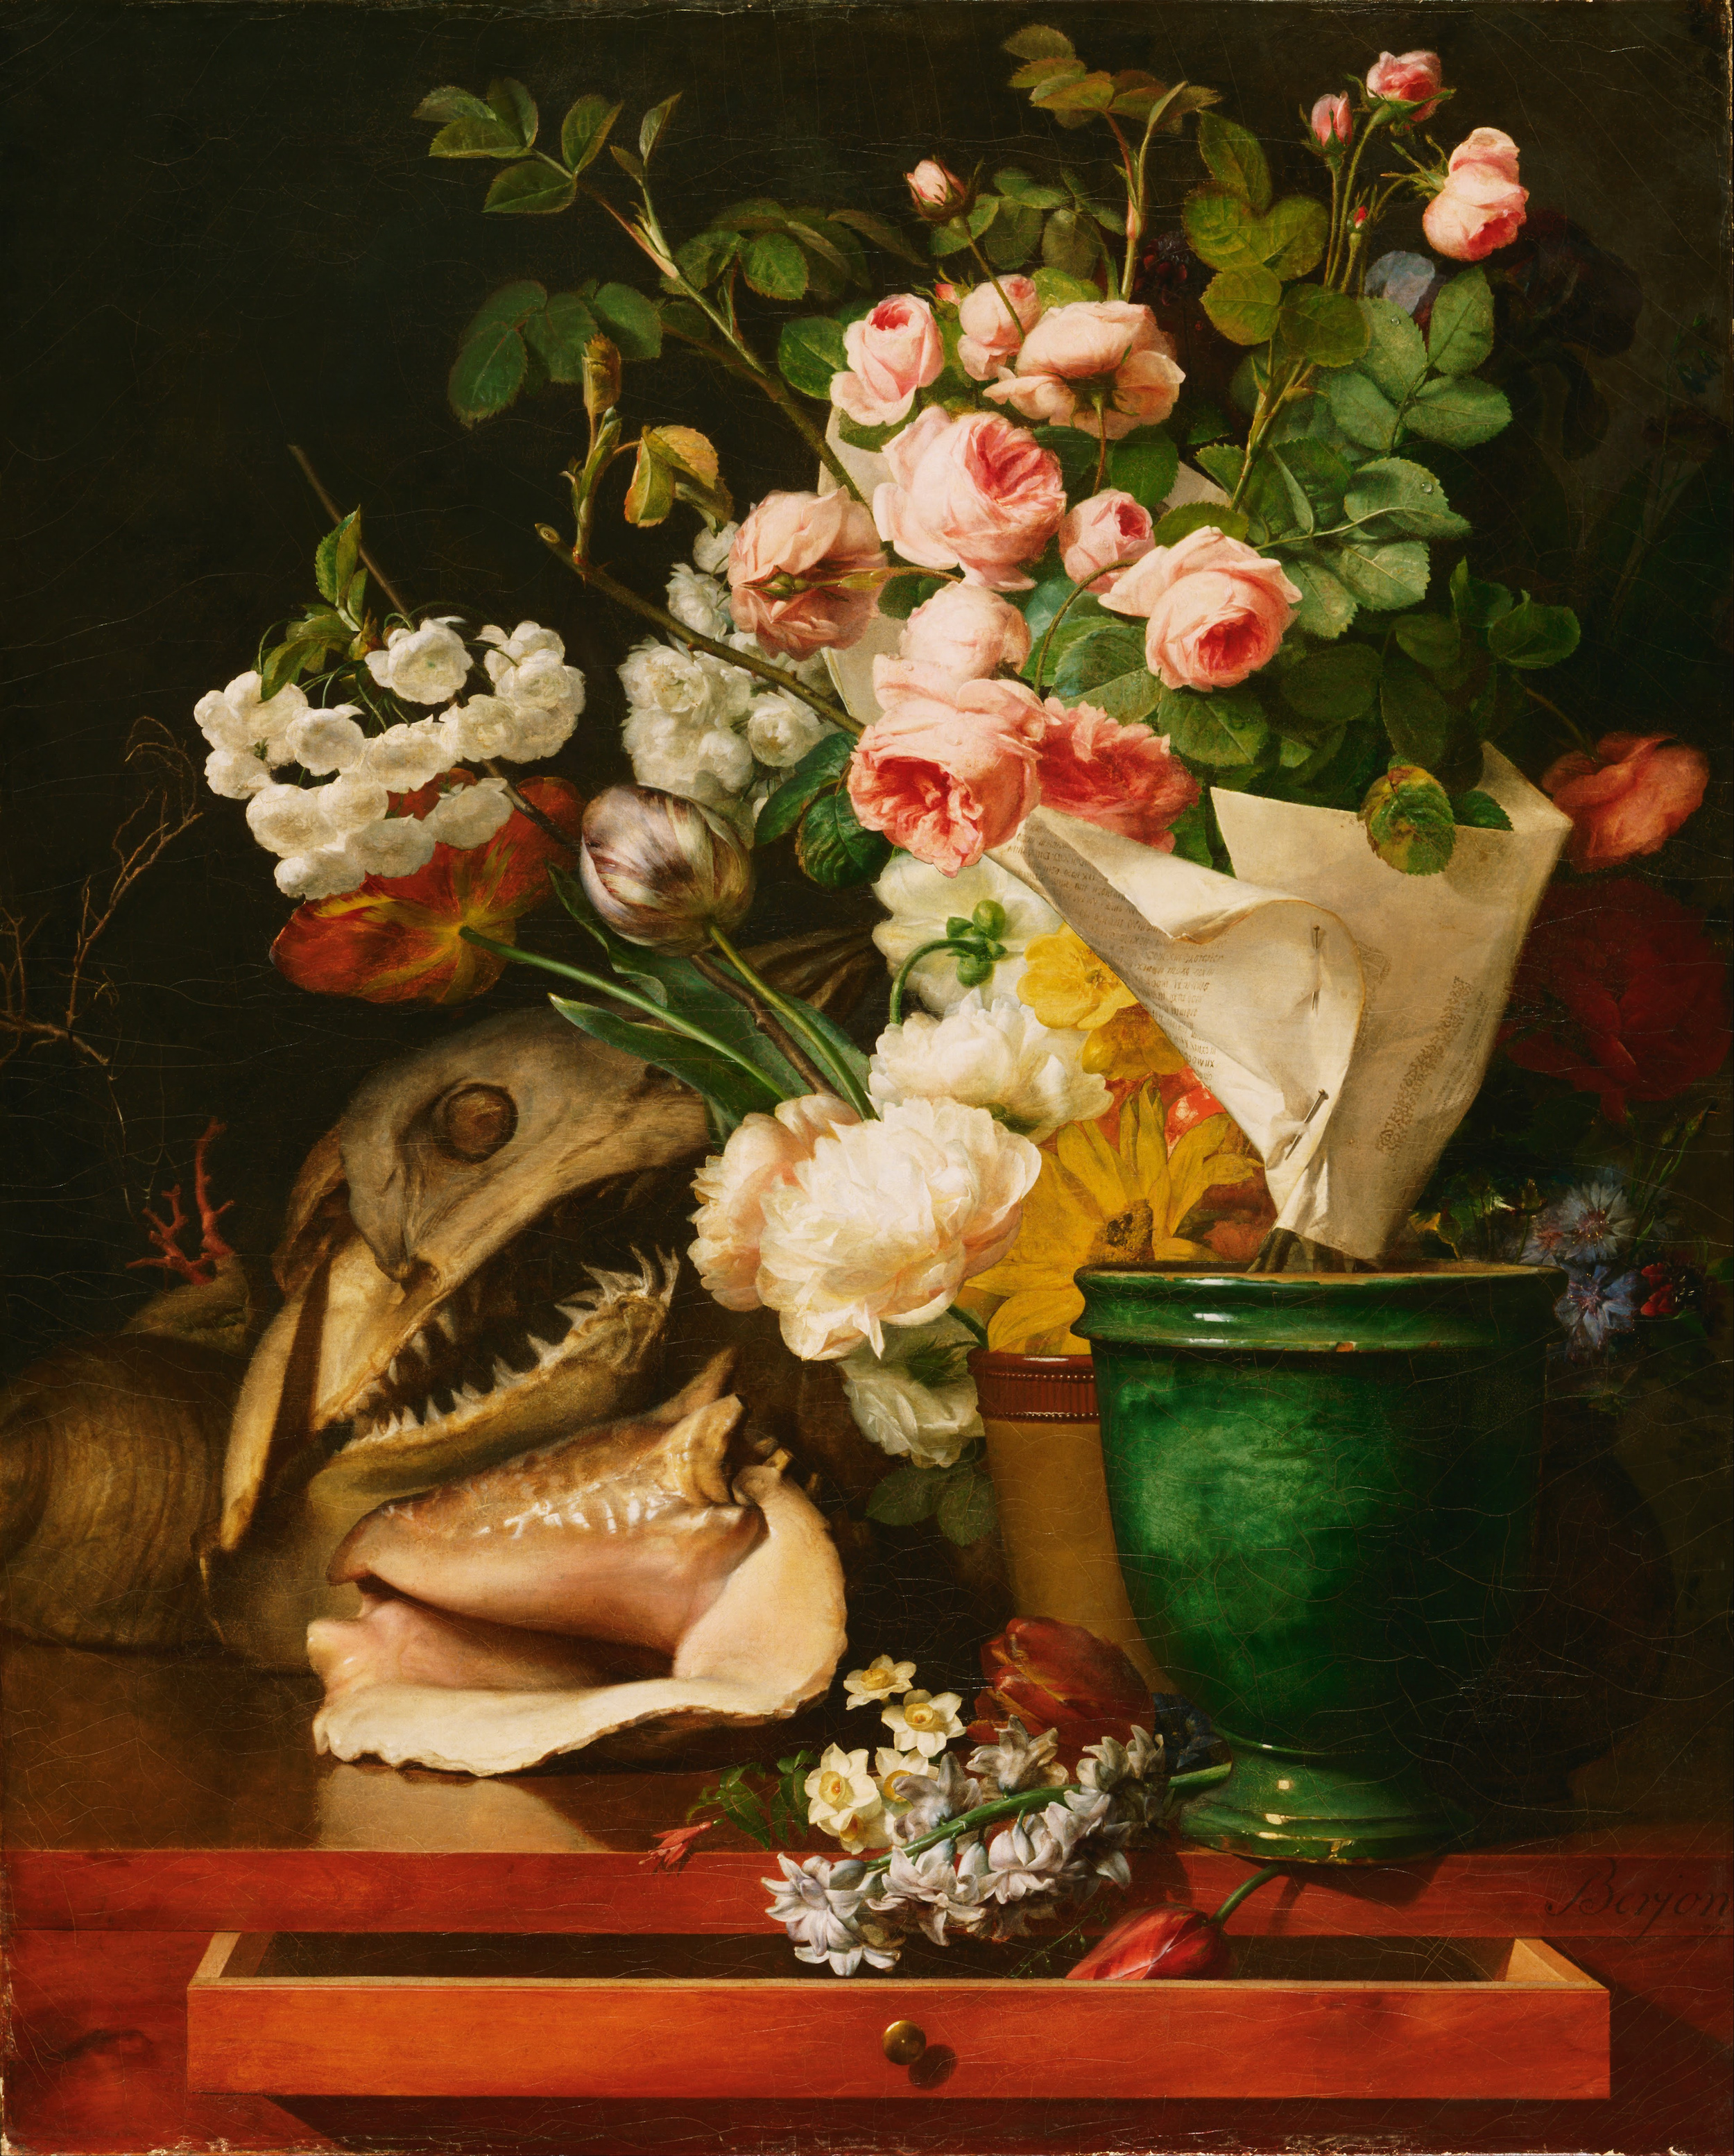 花卉靜物 by Antoine Berjon - 1819 - 34.57 x 42.5 英寸 